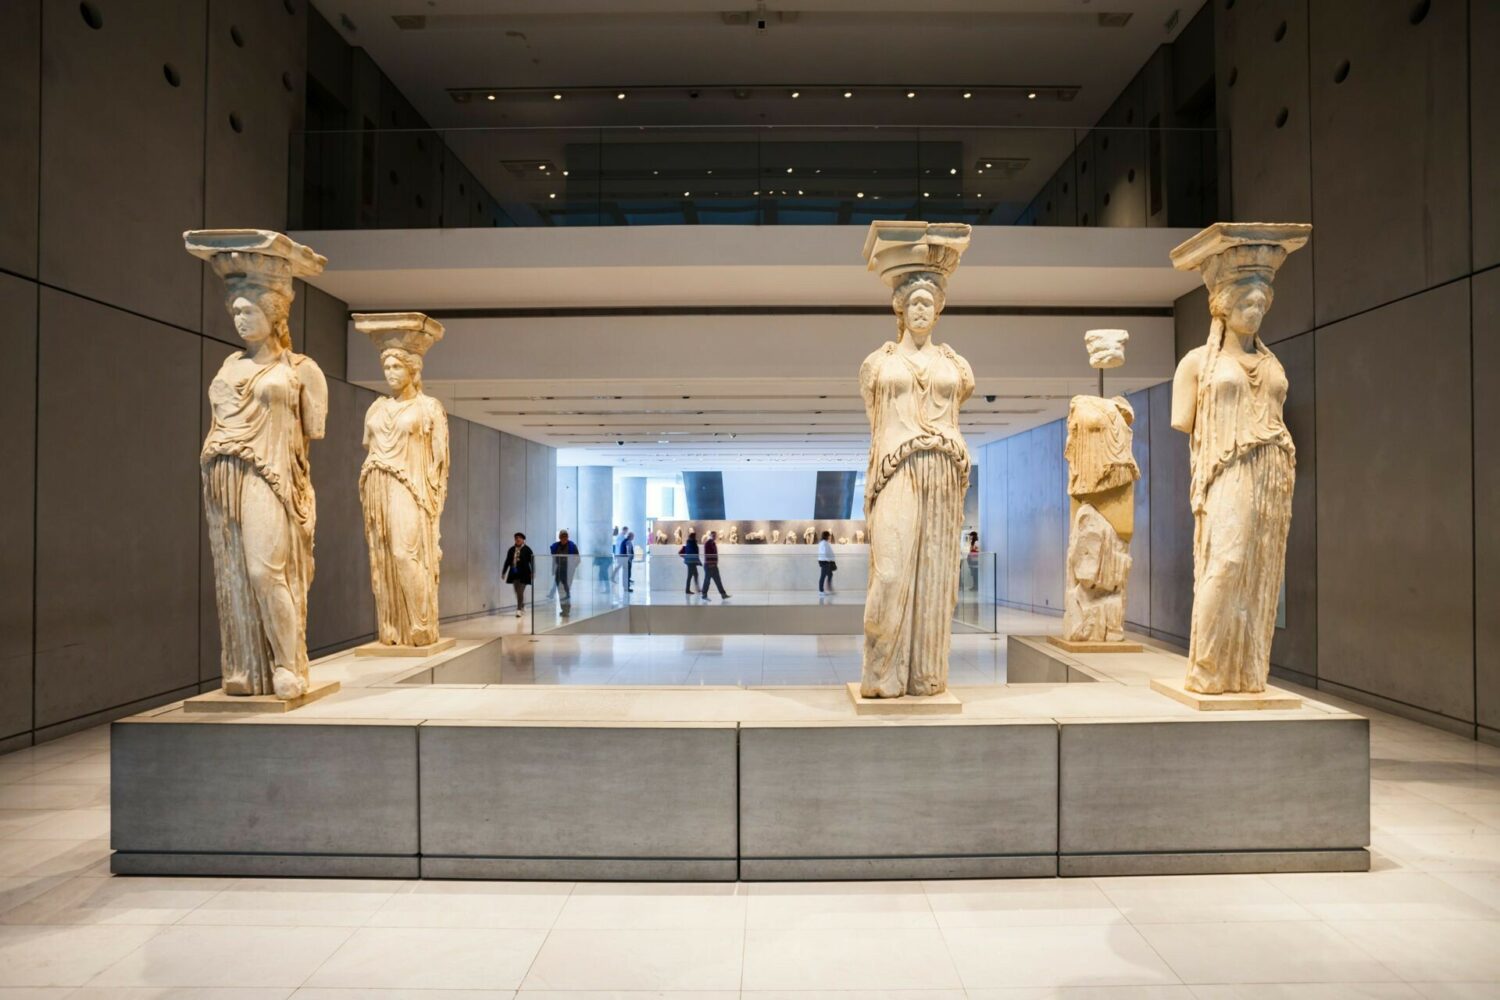 Μουσείο Ακρόπολης: Διευρυμένο ωράριο και περιήγηση στην αρχαία γειτονιά της Αθήνας